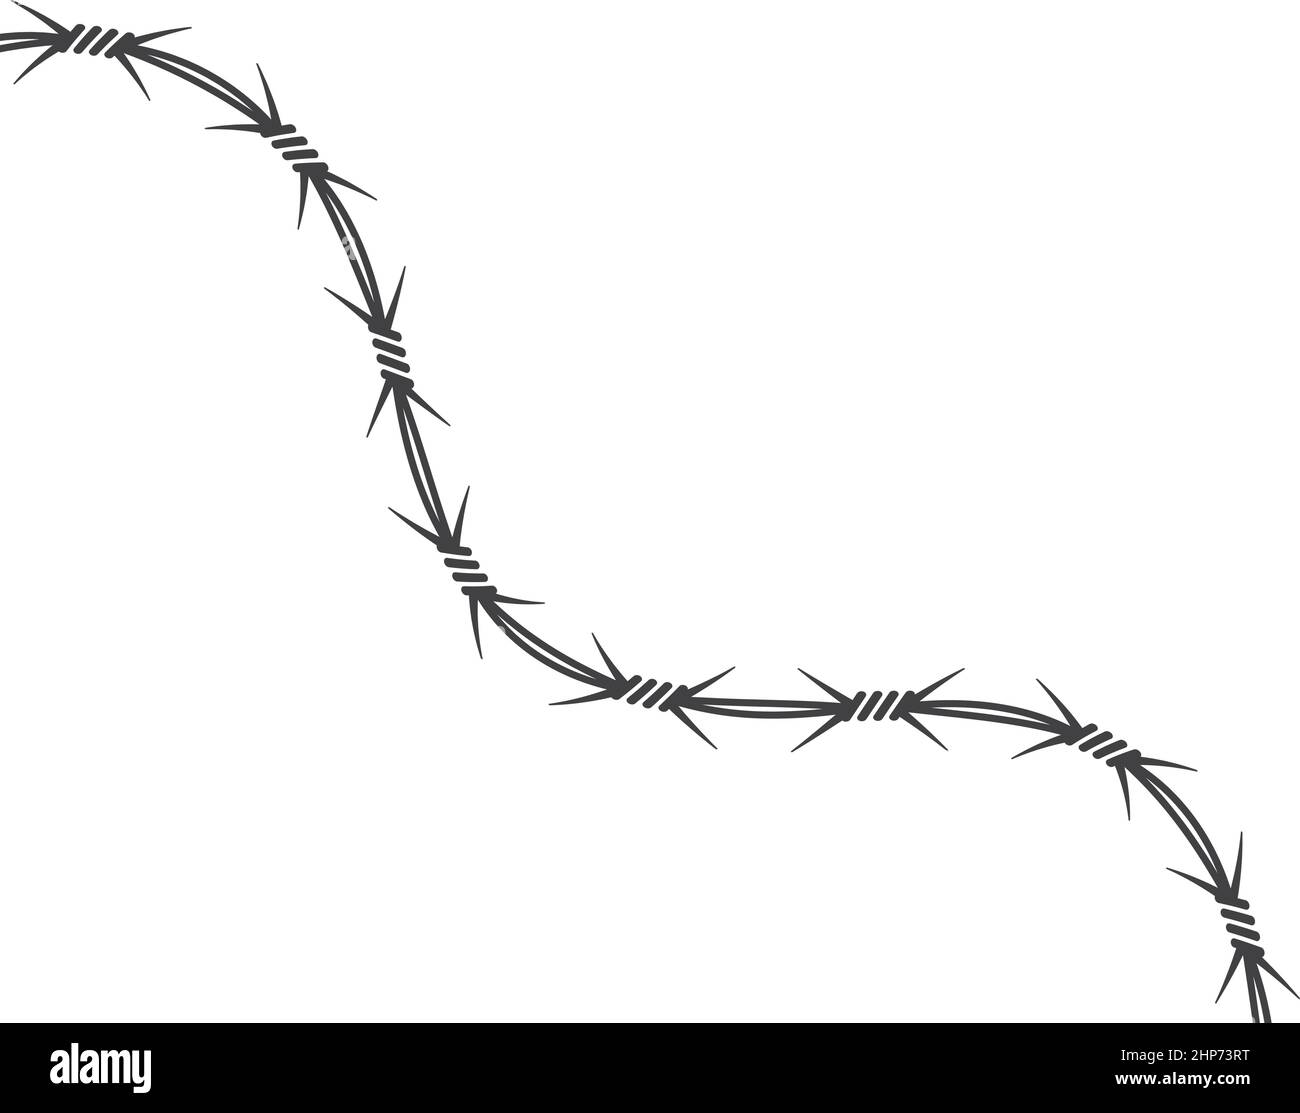 Il disegno vettoriale del filo spinato Foto stock - Alamy